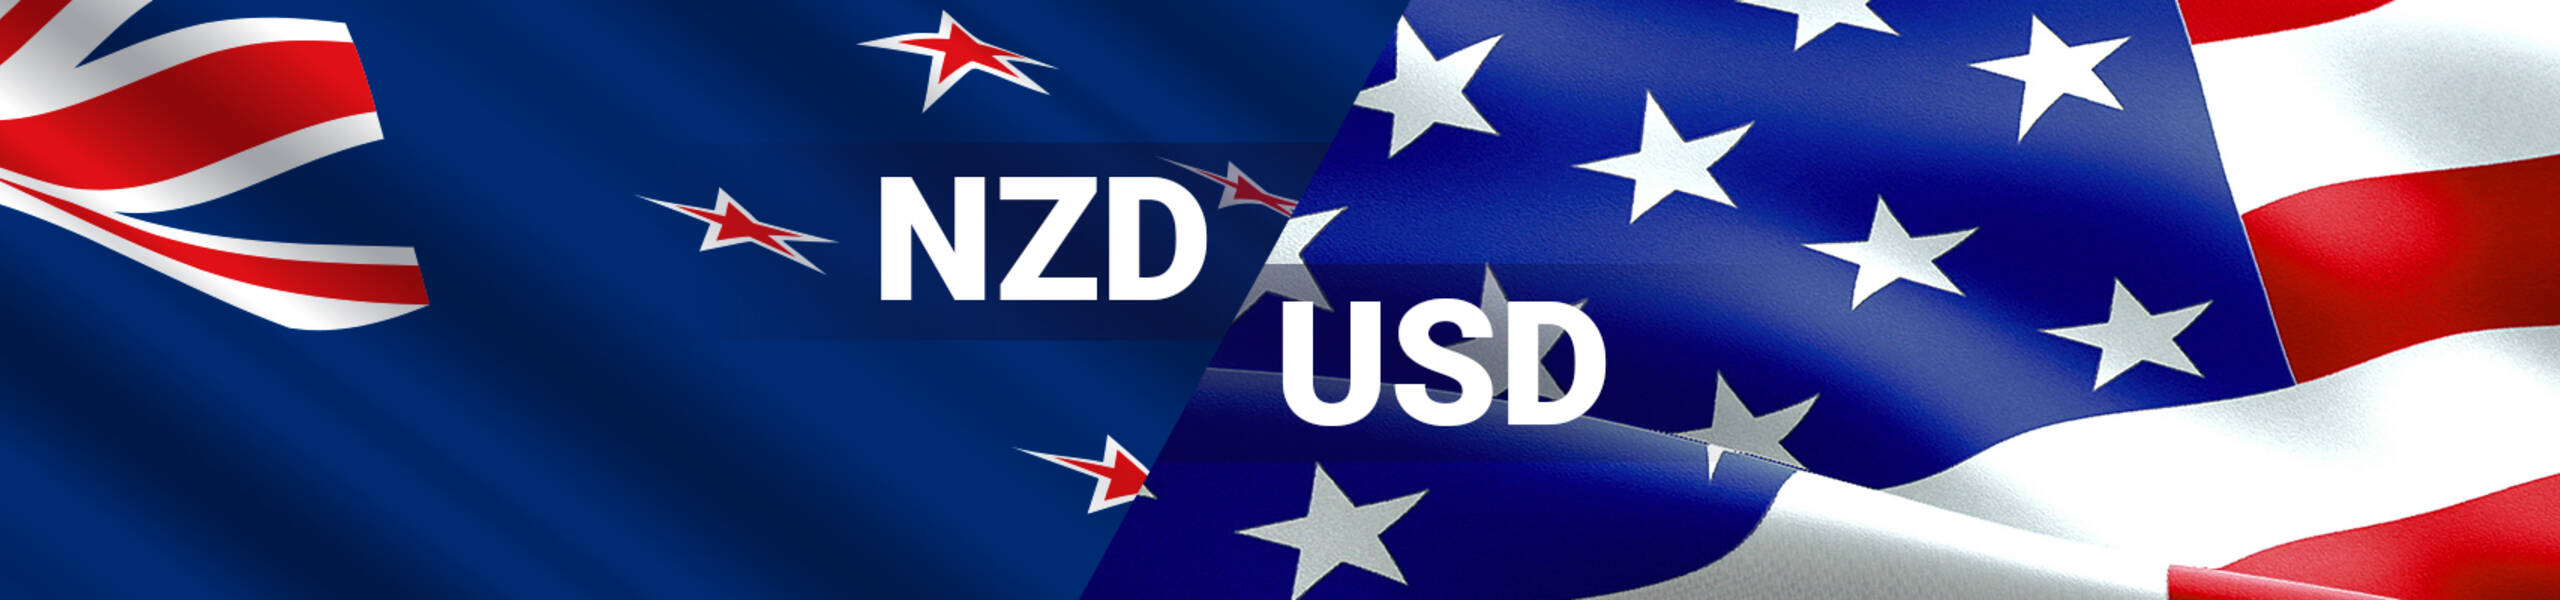 NZD/USD テクニカル分析 2017/10/20